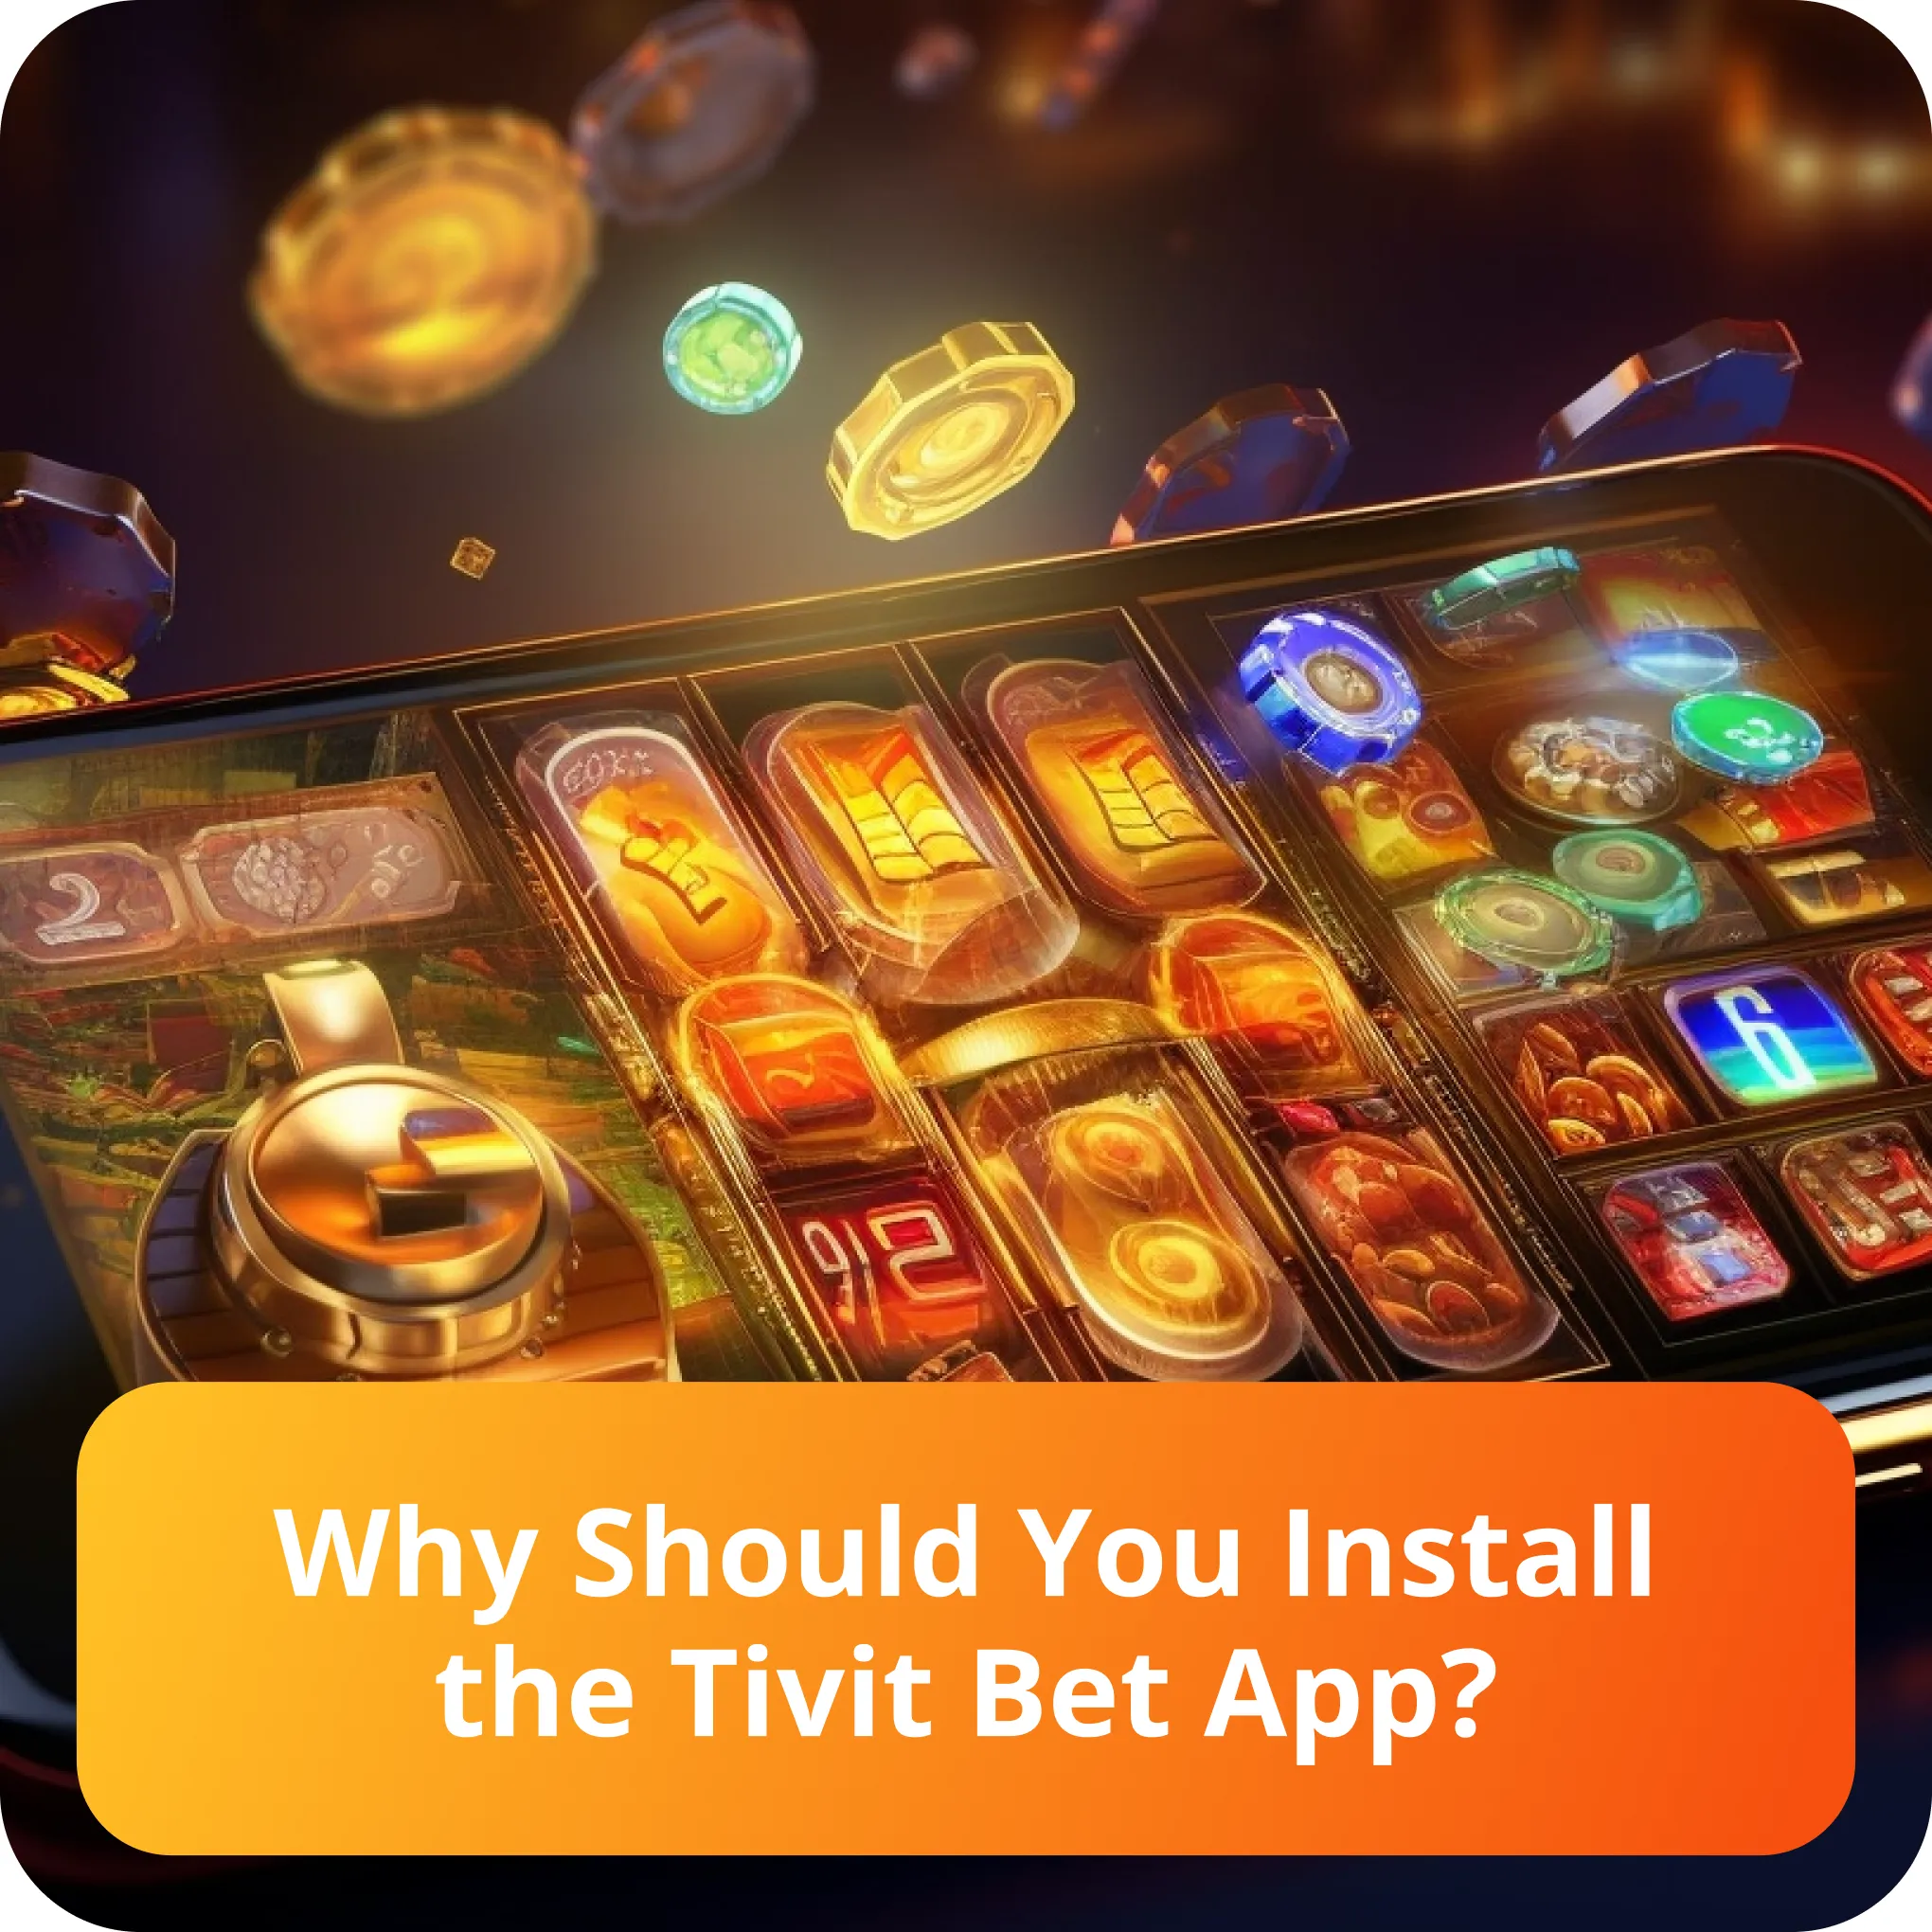 tivit bet app install